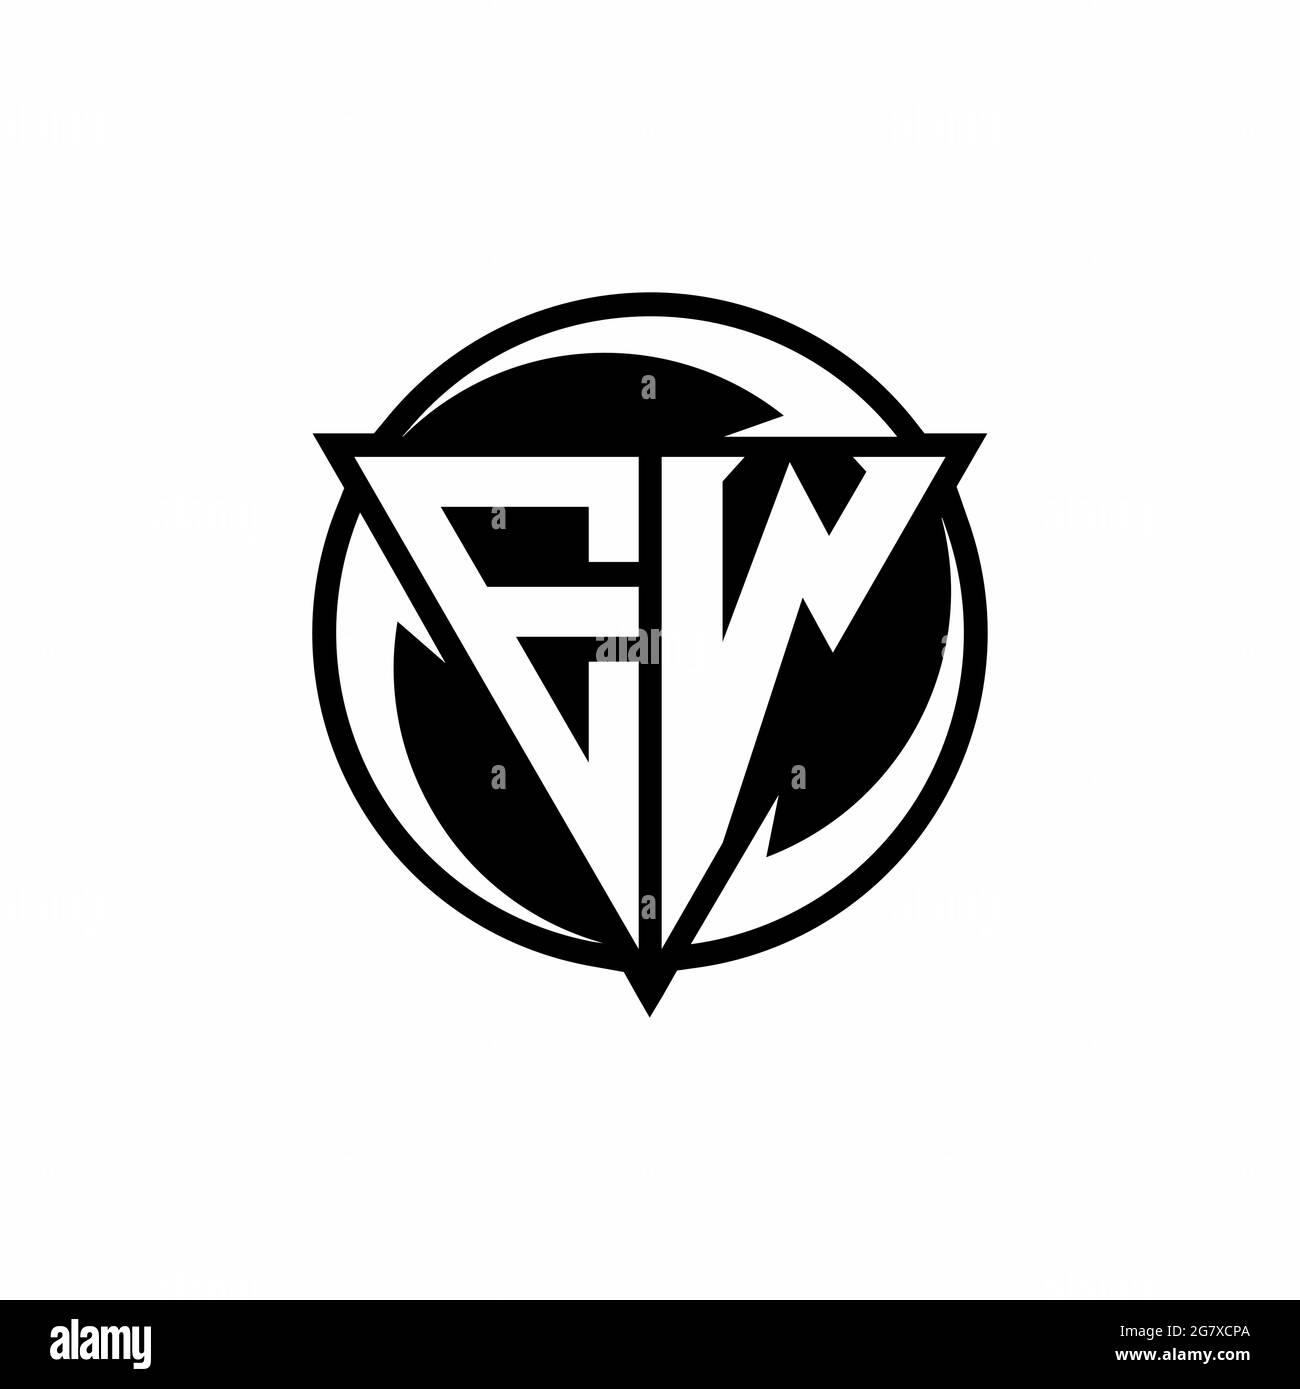 Logo EW avec forme triangulaire et modèle de forme arrondie circulaire isolé sur fond blanc Illustration de Vecteur